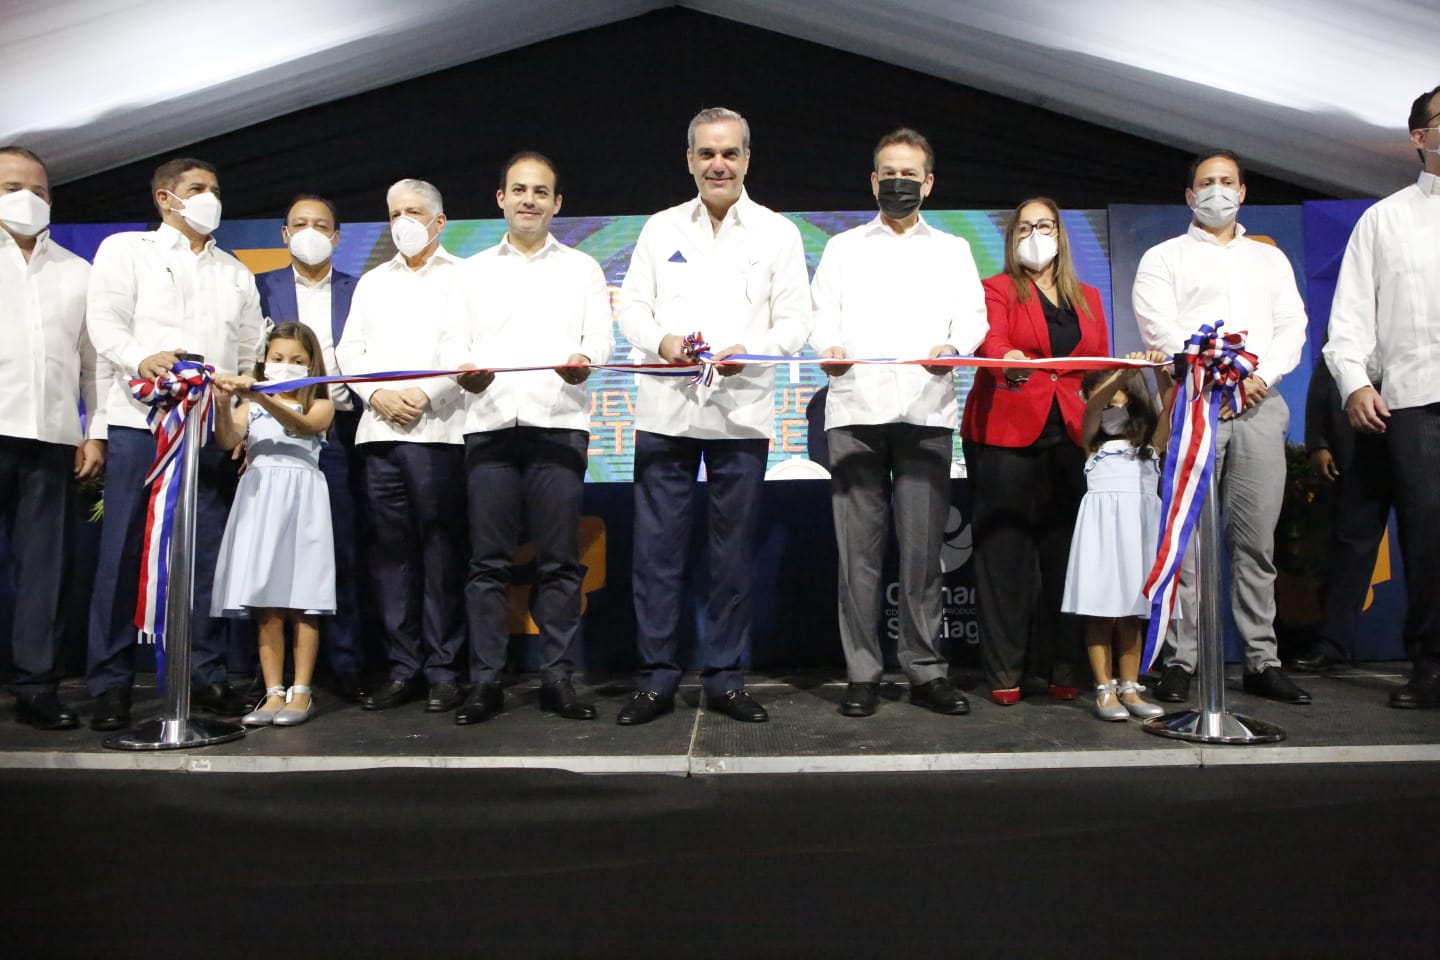 REPÚBLICA DOMINICANA: Presidente Abinader lanza proyecto Santiago 2025 con una inversión de 42,000 millones de pesos en 4 años